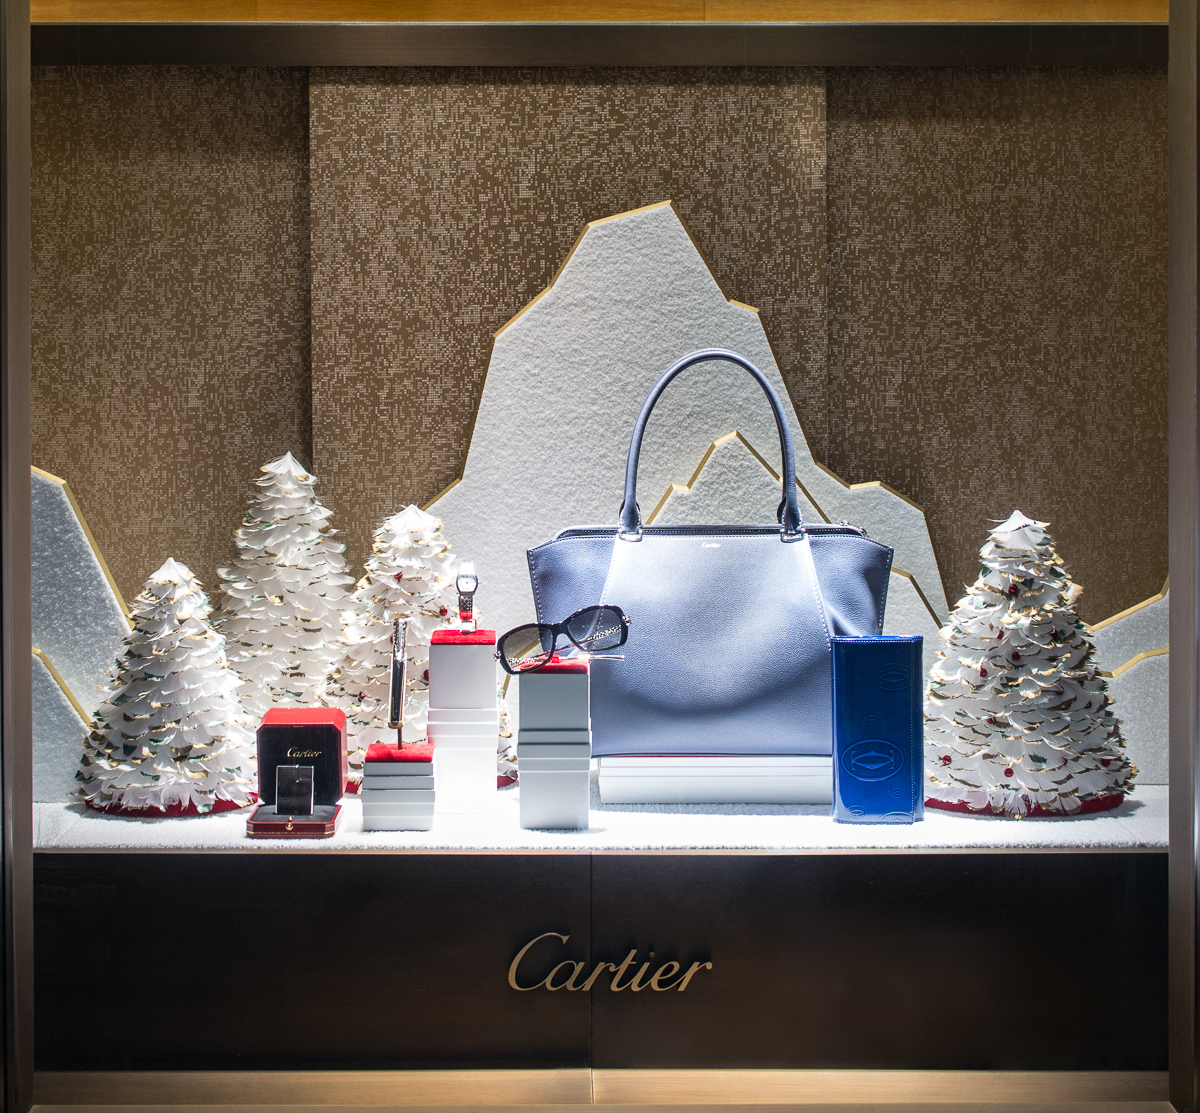 Cartier Interactive Holiday Window Display 2012 by Zigelbaum + Coelho -  Best Window Displays